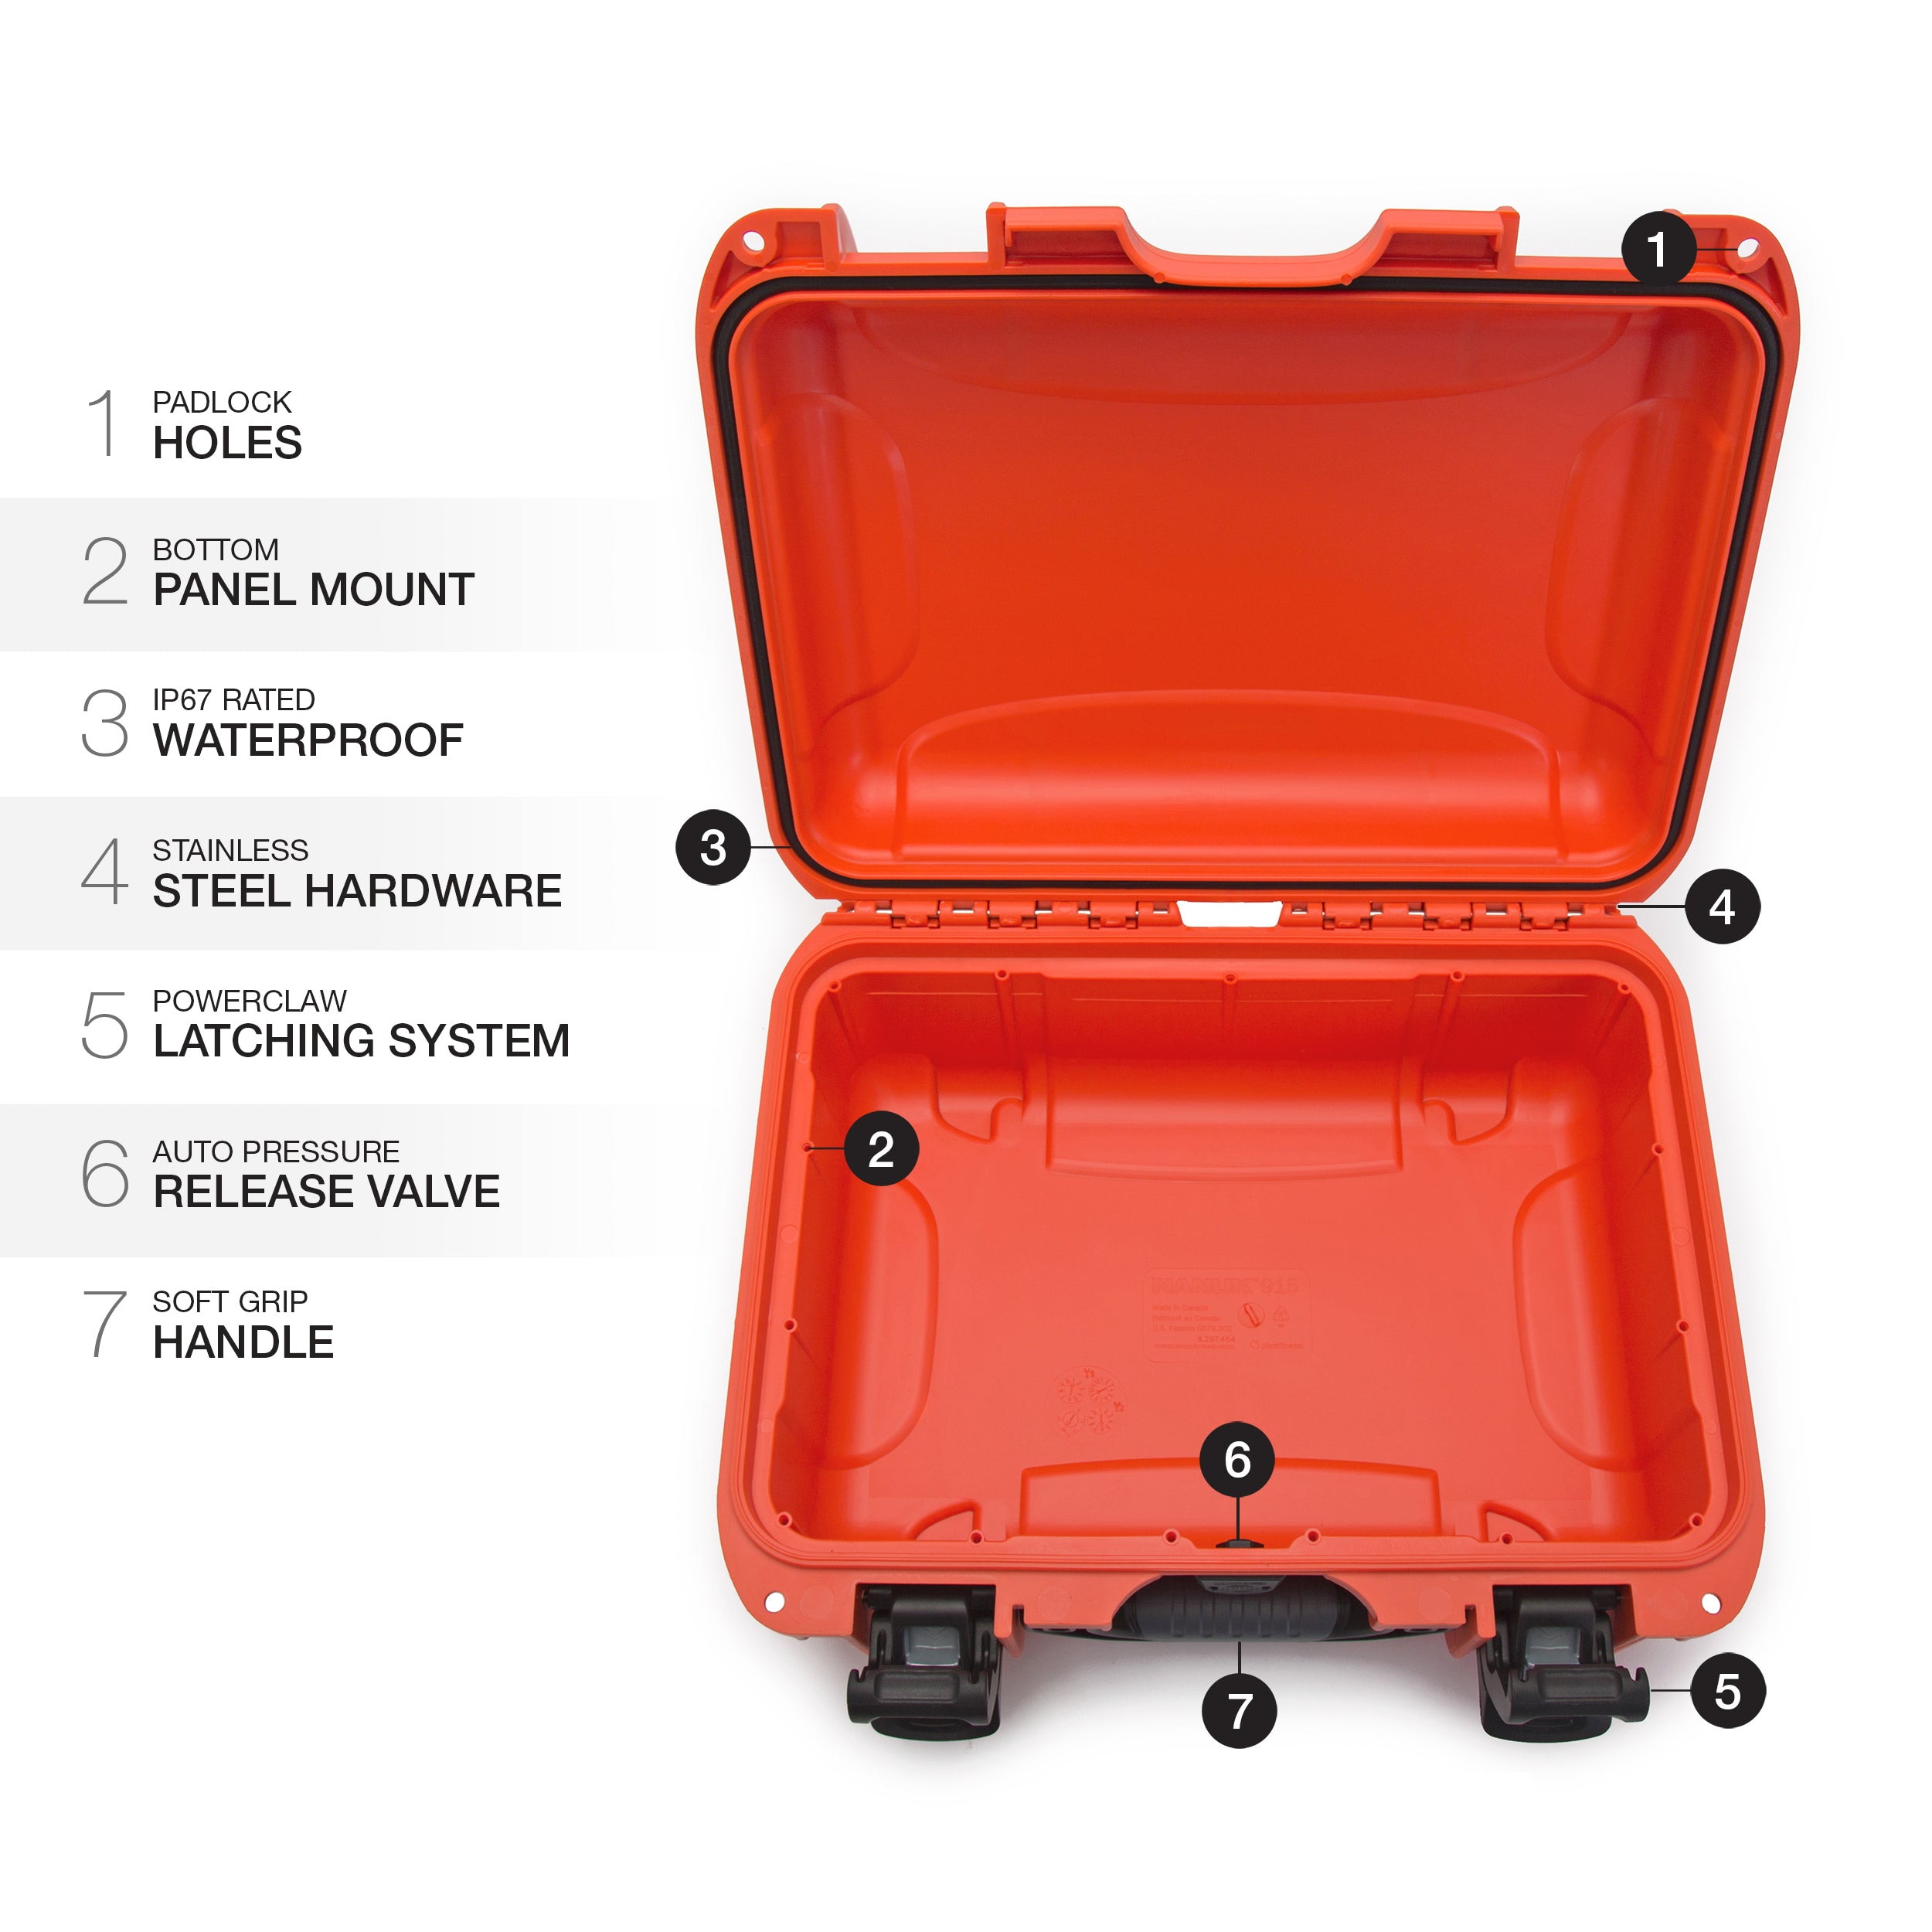 Nanuk 915-0003 Waterproof Hard Case Empty - Orange